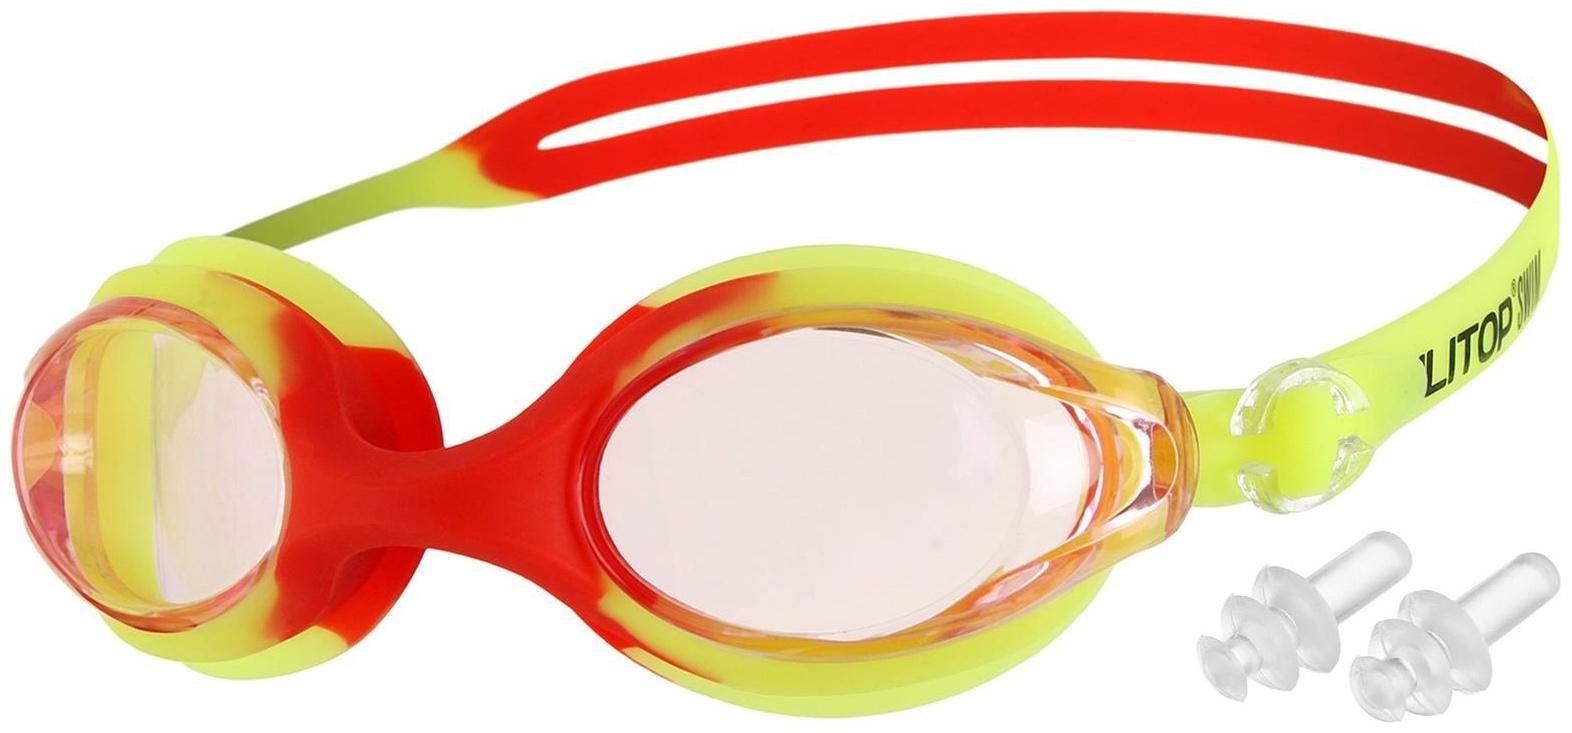 Очки для плавания + беруши, взрослые, цвета микс